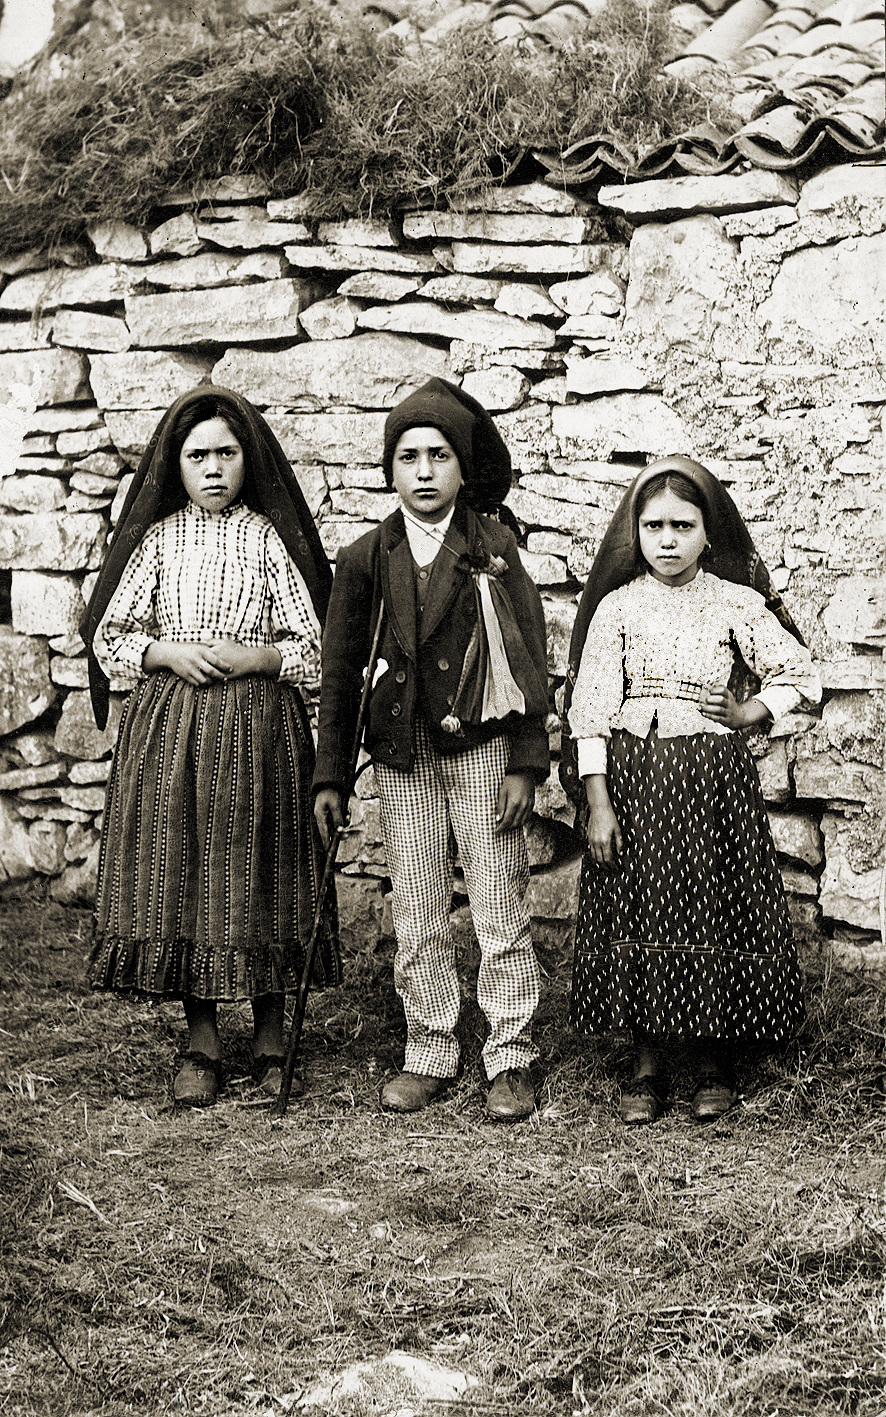 (left to right) Lúcia dos Santos with her cousins Francisco and Jacinta Marto, 1917